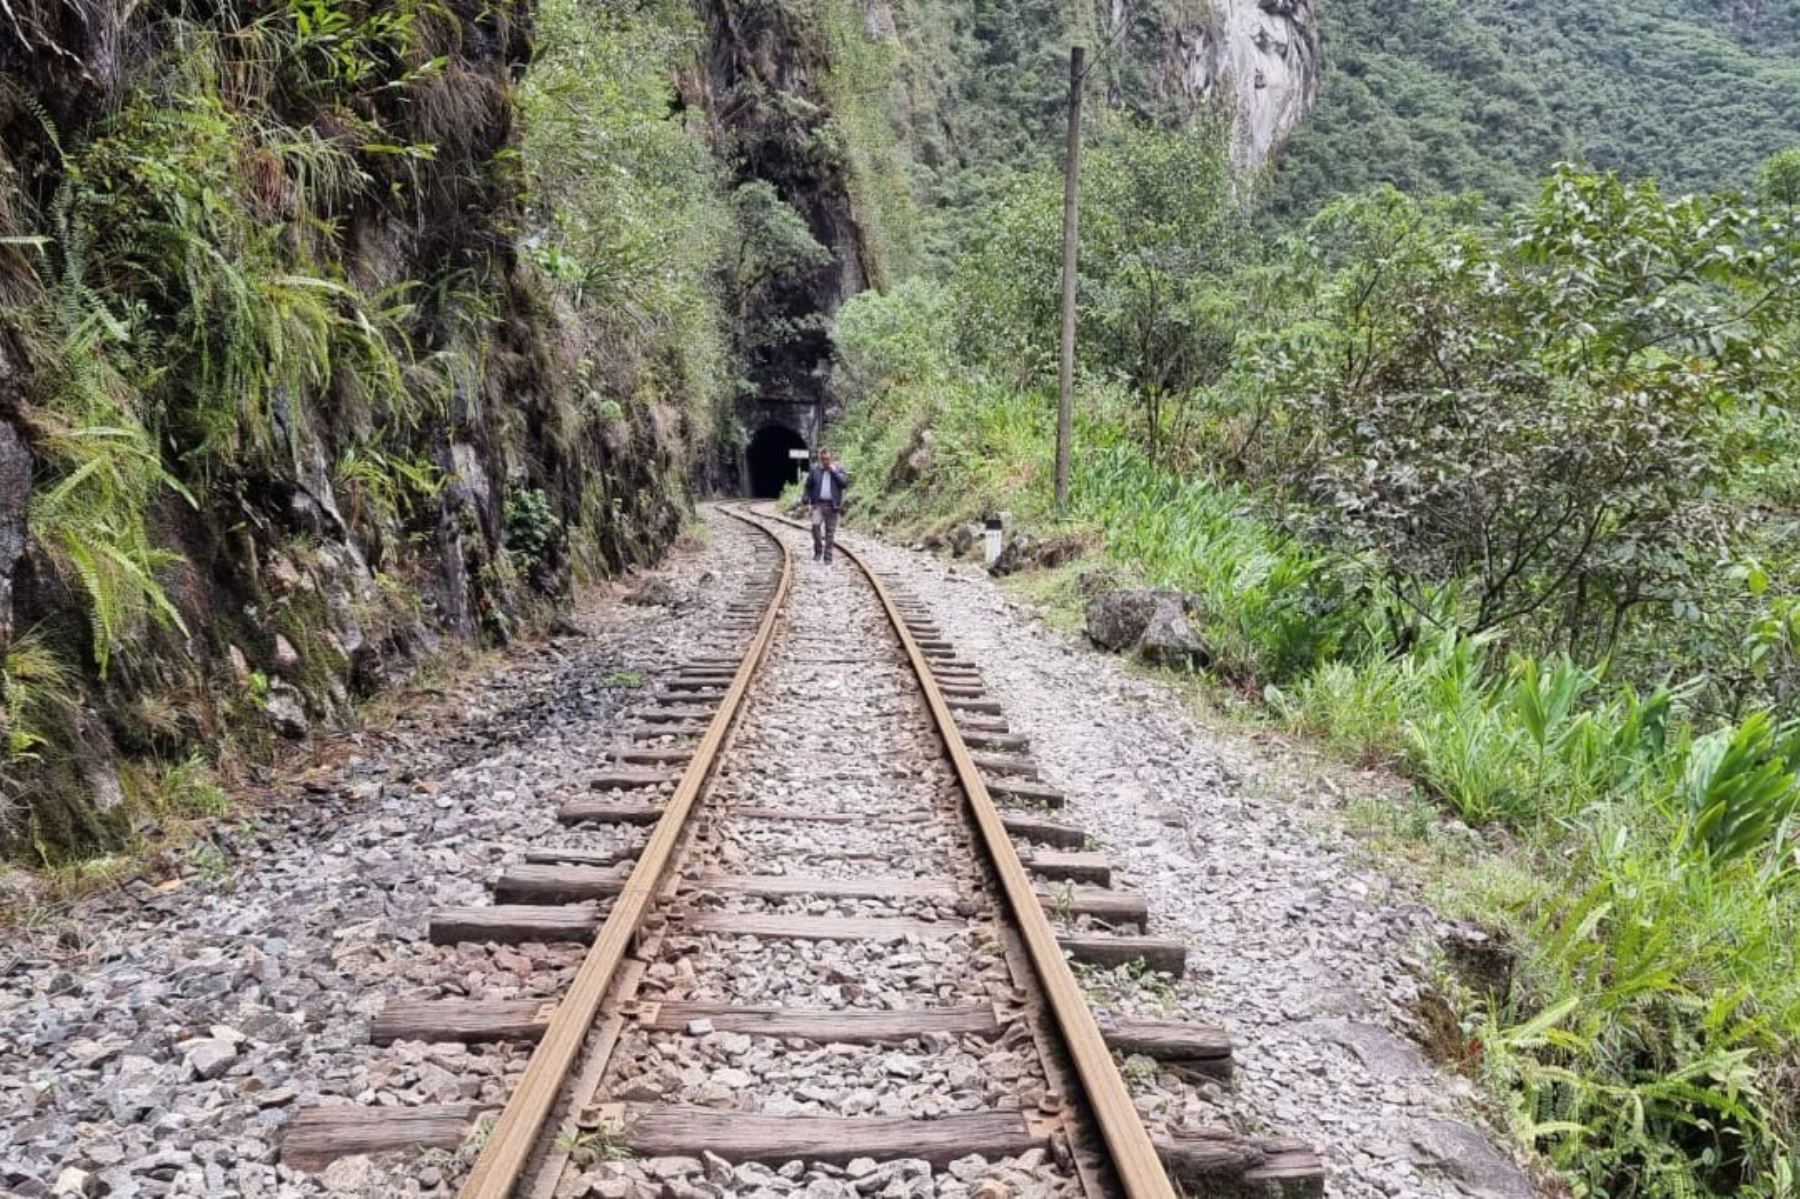 Los trenes que cubren la ruta Ollantaytambo-Machu Picchu-Hidroeléctrica ya pueden ingresar sin inconvenientes, señala el comunicado de la empresa Ferrocarril Transandino S.A., concesionario de la vía férrea del sur y sur oriente del país. Foto: ANDINA/difusión.